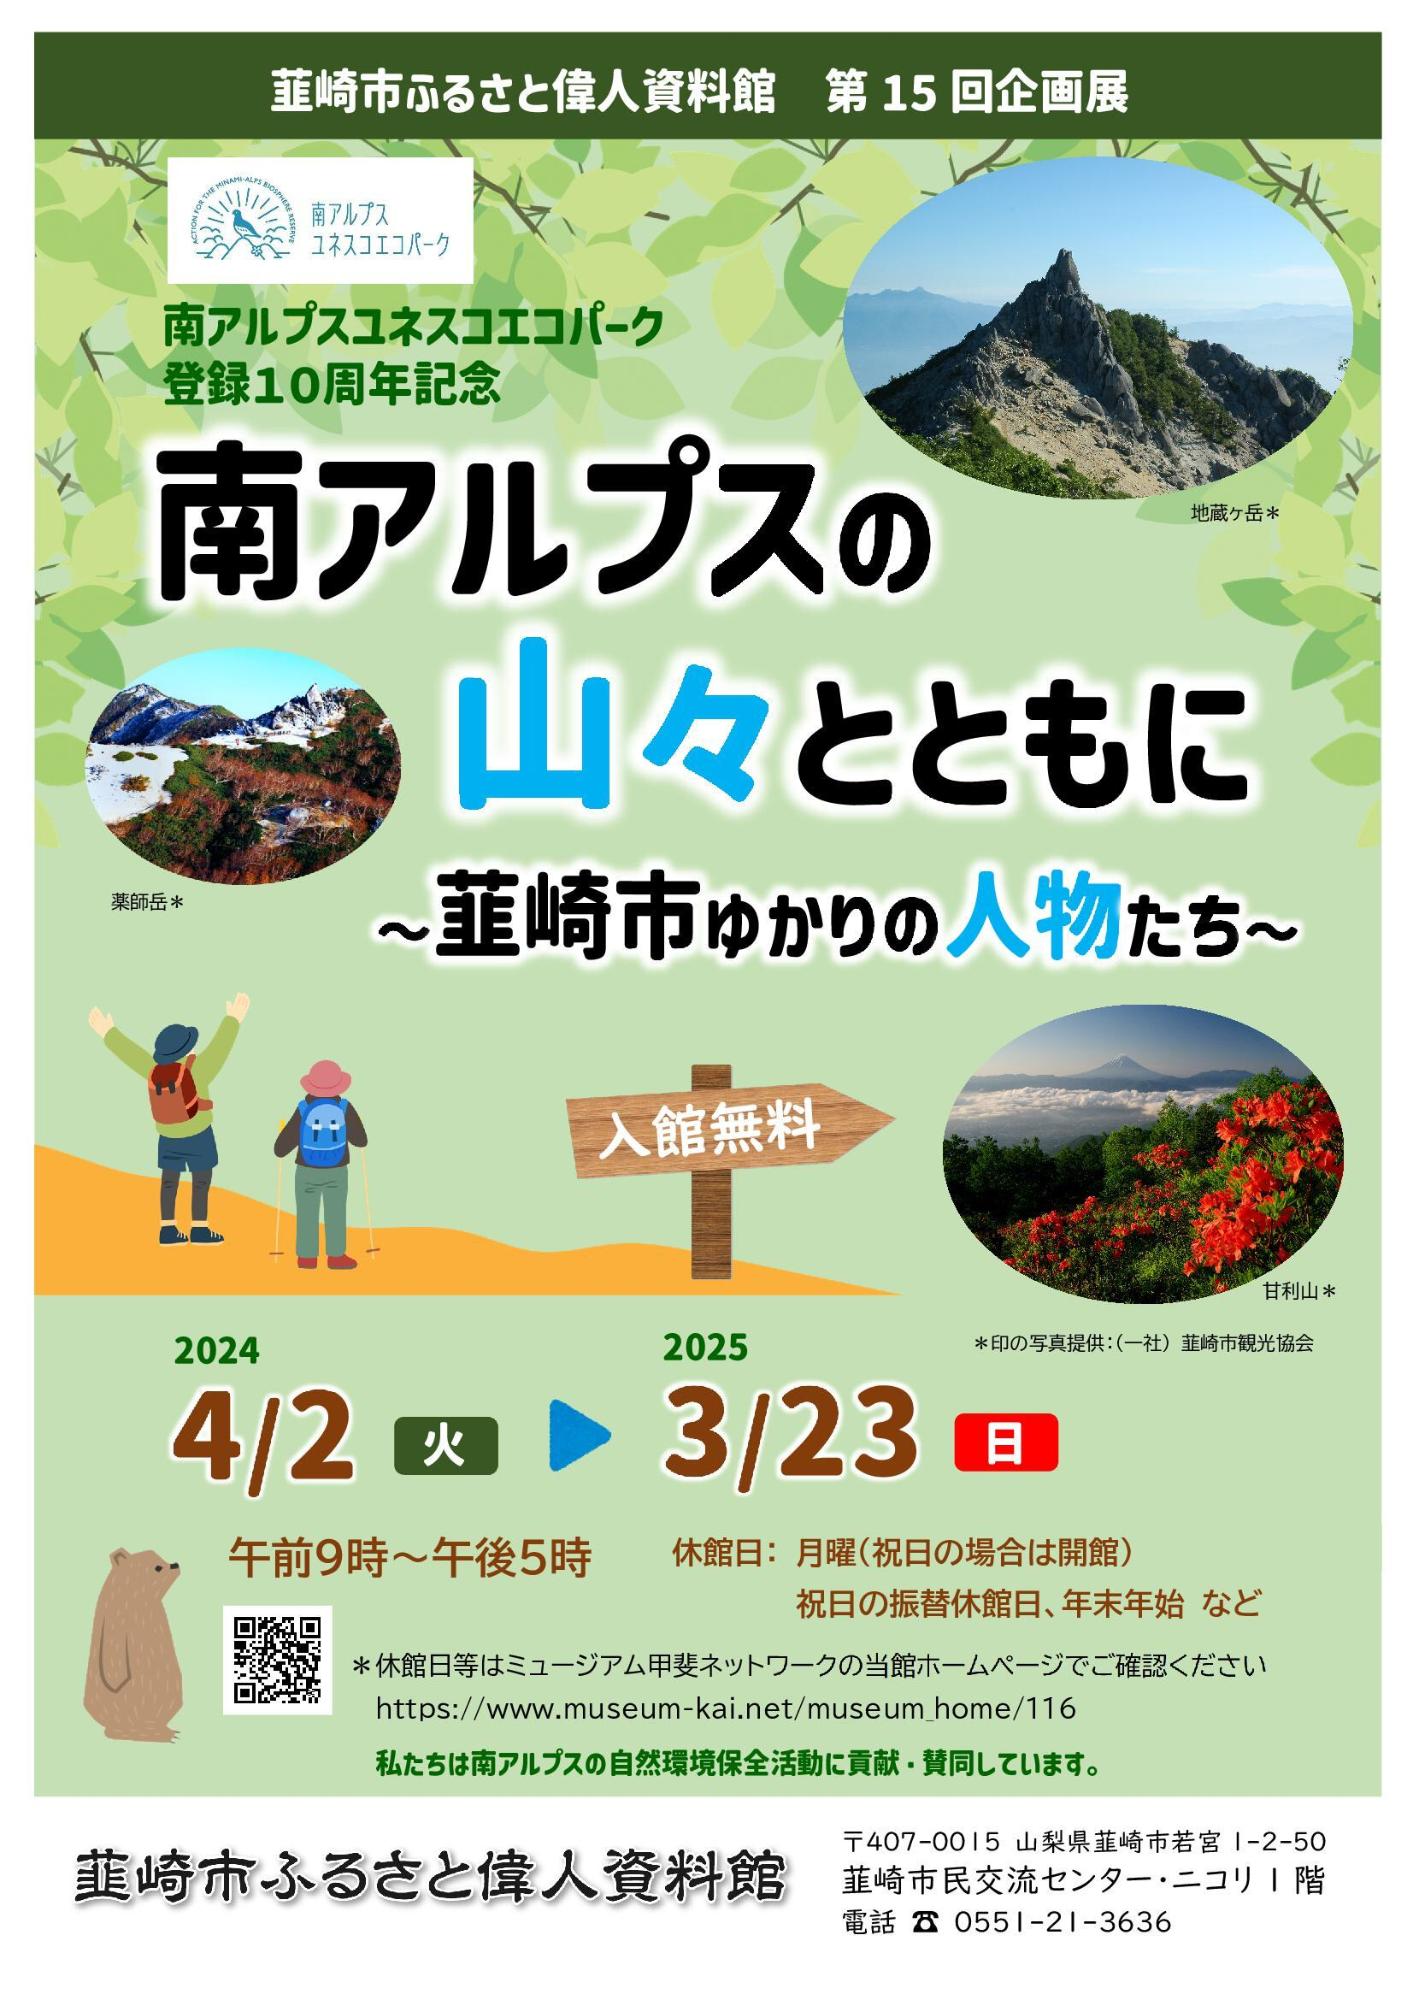 韮崎市ふるさと偉人資料館第5回企画展「南アルプスの山々とともに」